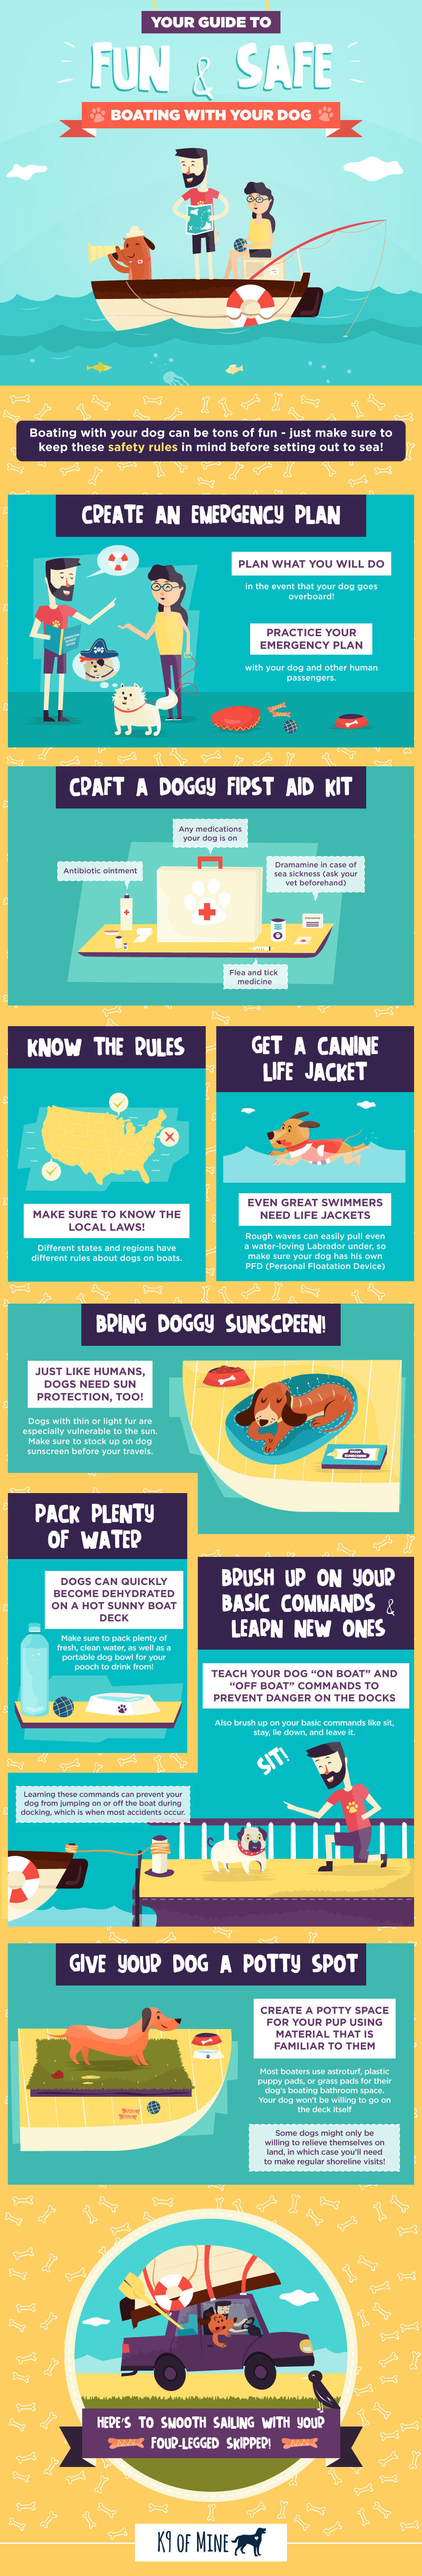 https://windcheckmagazine.com/app/uploads/2019/01/dog-boating-safety-infographic-1.png